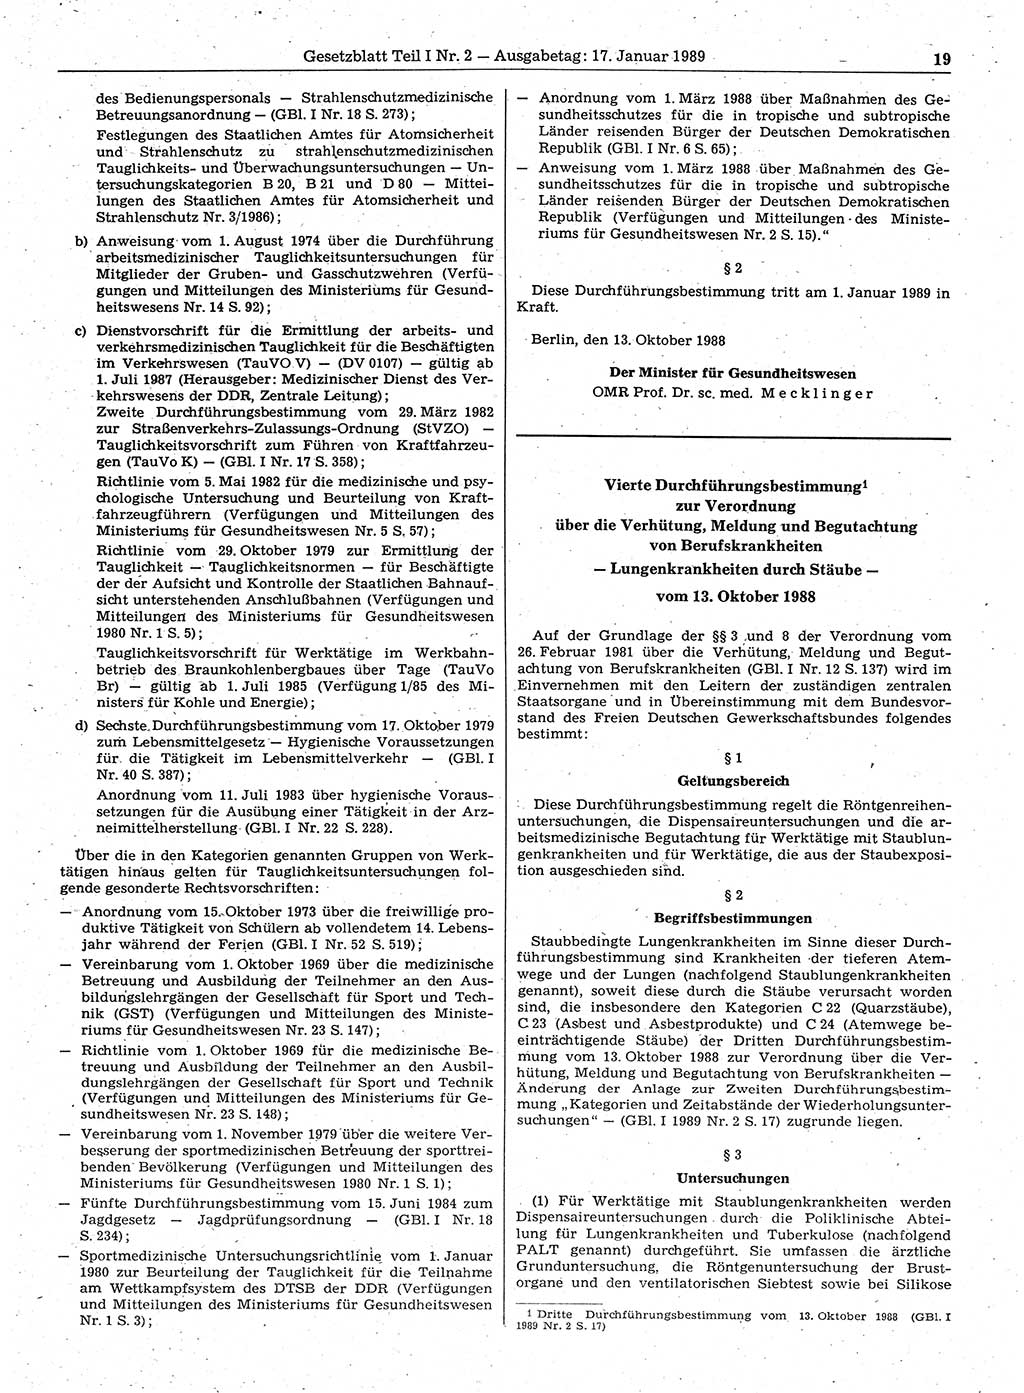 Gesetzblatt (GBl.) der Deutschen Demokratischen Republik (DDR) Teil Ⅰ 1989, Seite 19 (GBl. DDR Ⅰ 1989, S. 19)